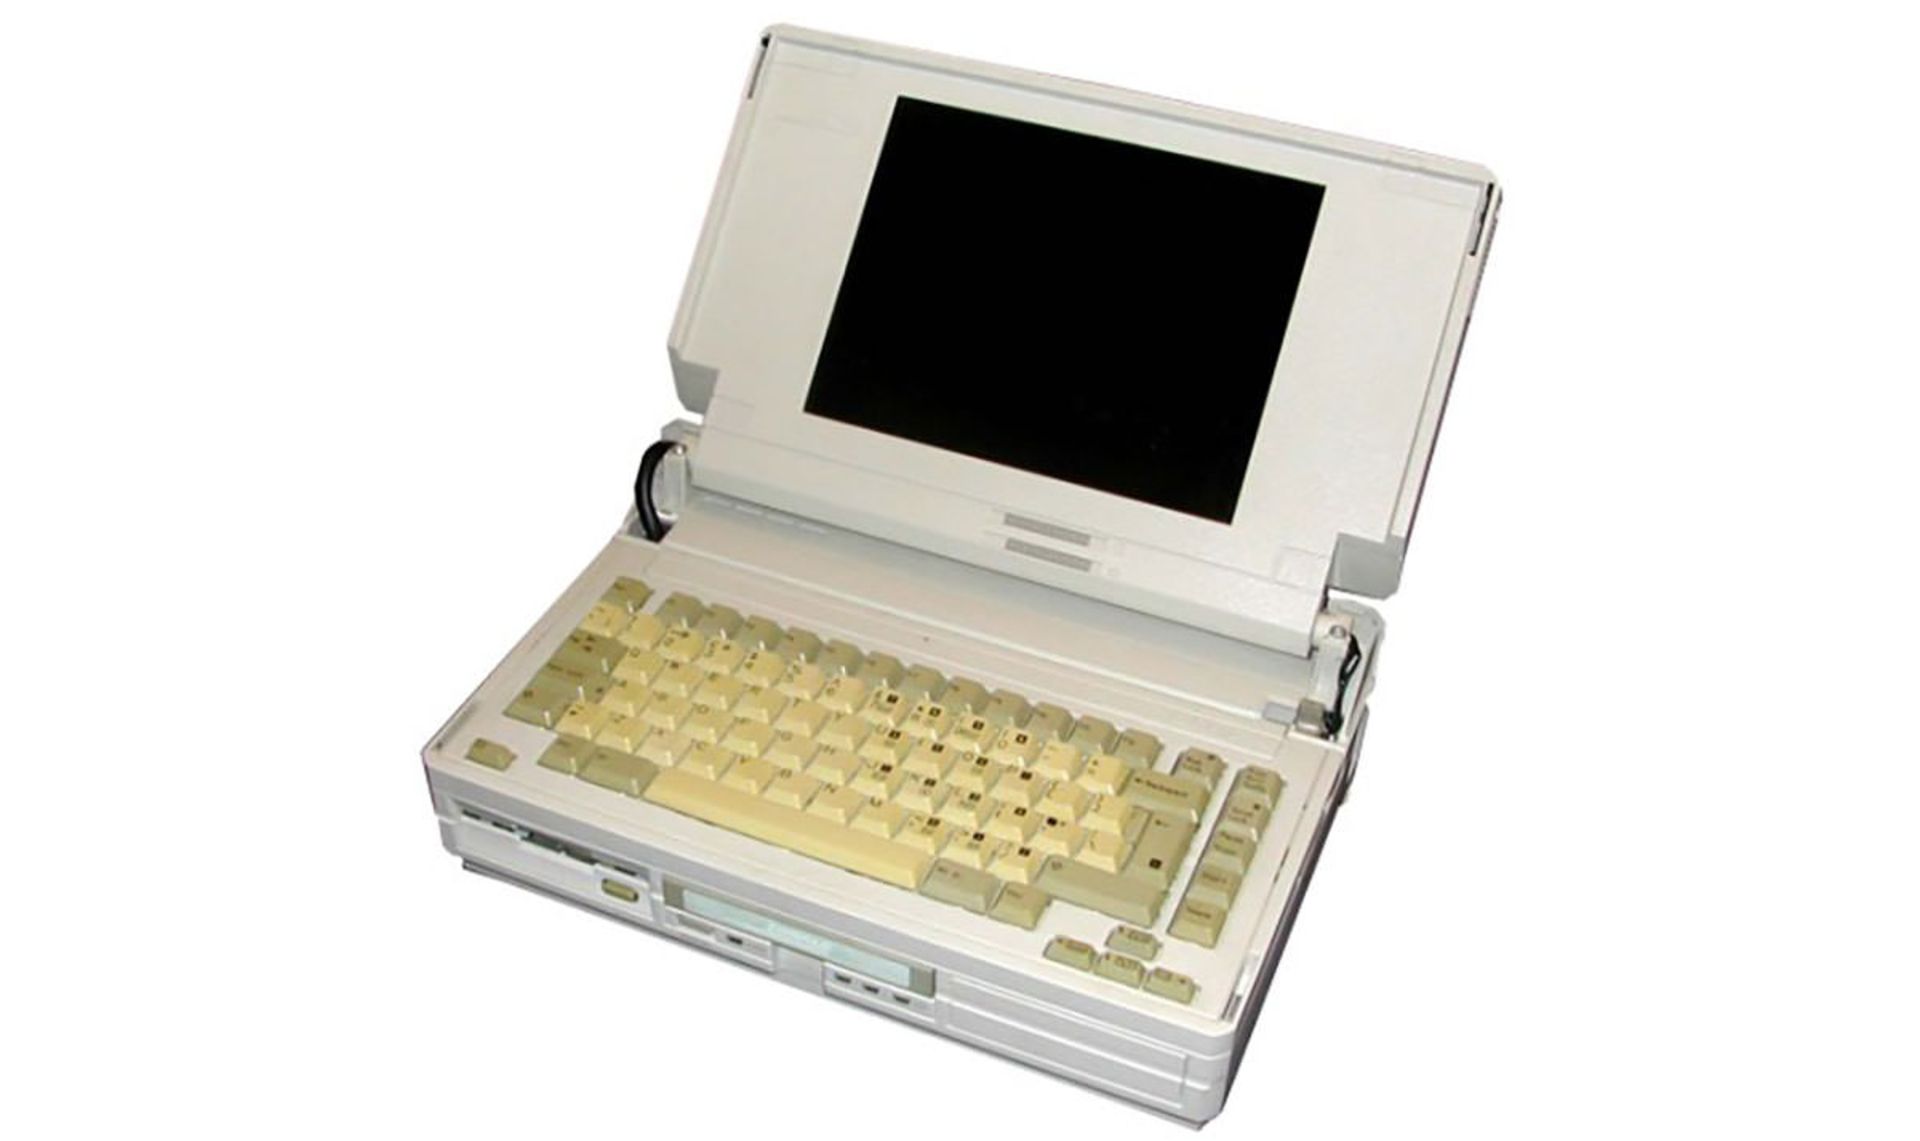 مرجع متخصصين ايران  Compaq Portable SLT